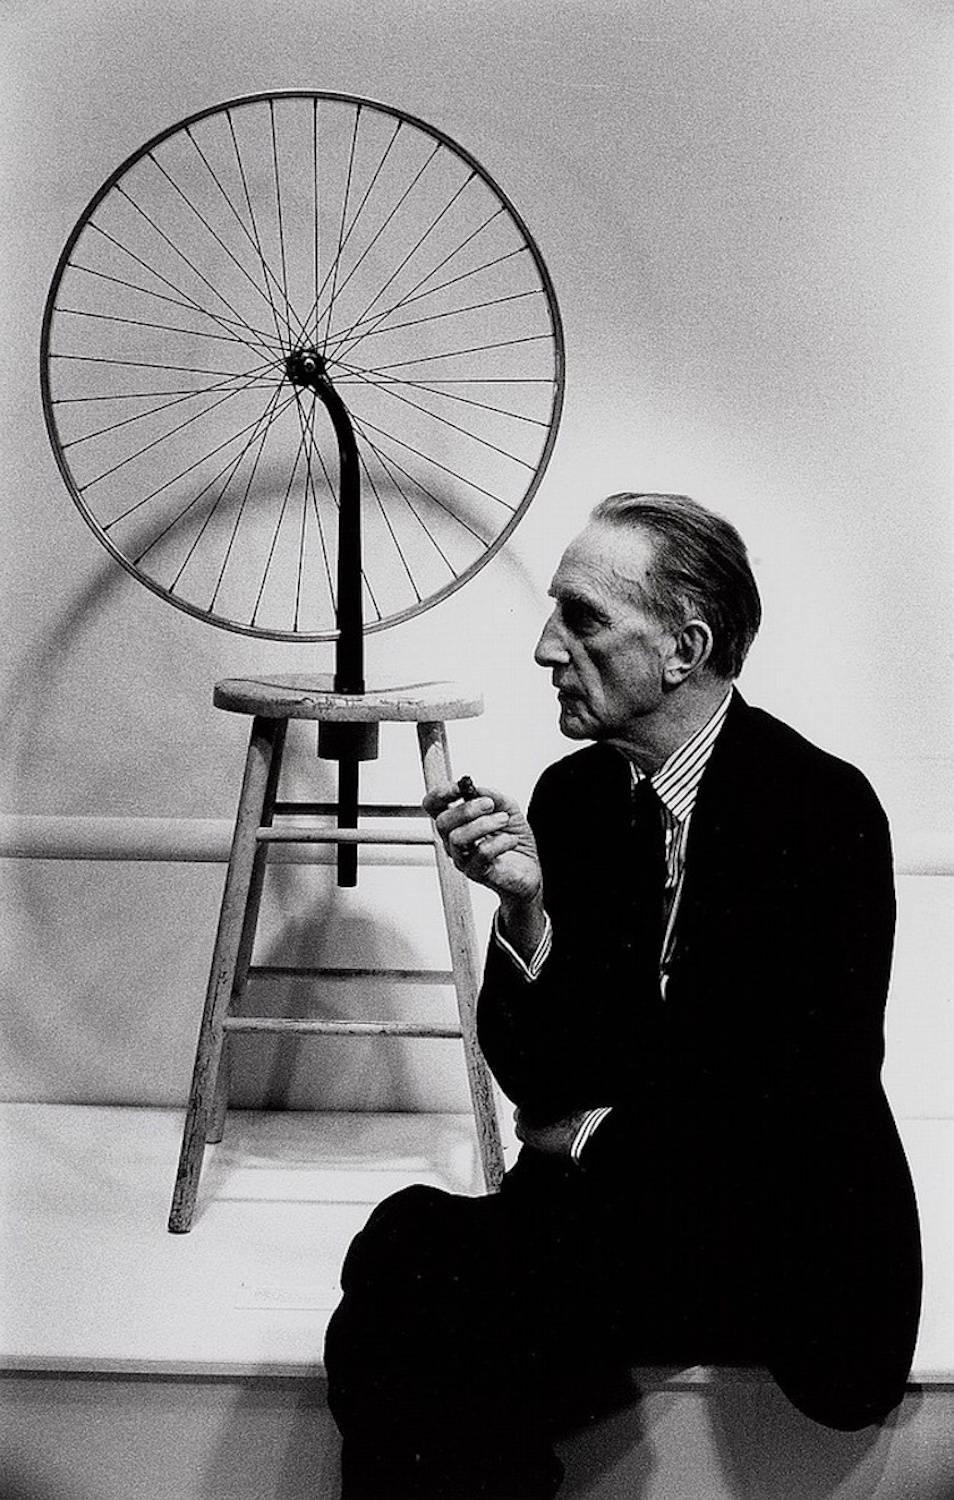 Marcel Duchamp mit seinem Fahrradrad, 1963

Silber-Gelatine-Druck
Auflagenhöhe: 15

Verfügbare Größen:

16 x 20 Zoll - $5.500
20 x 24 Zoll
30 x 40 Zoll
40 x 60 Zoll

Künstler Bio:

Julian Wasser begann seine Karriere im Alter von 14 Jahren als